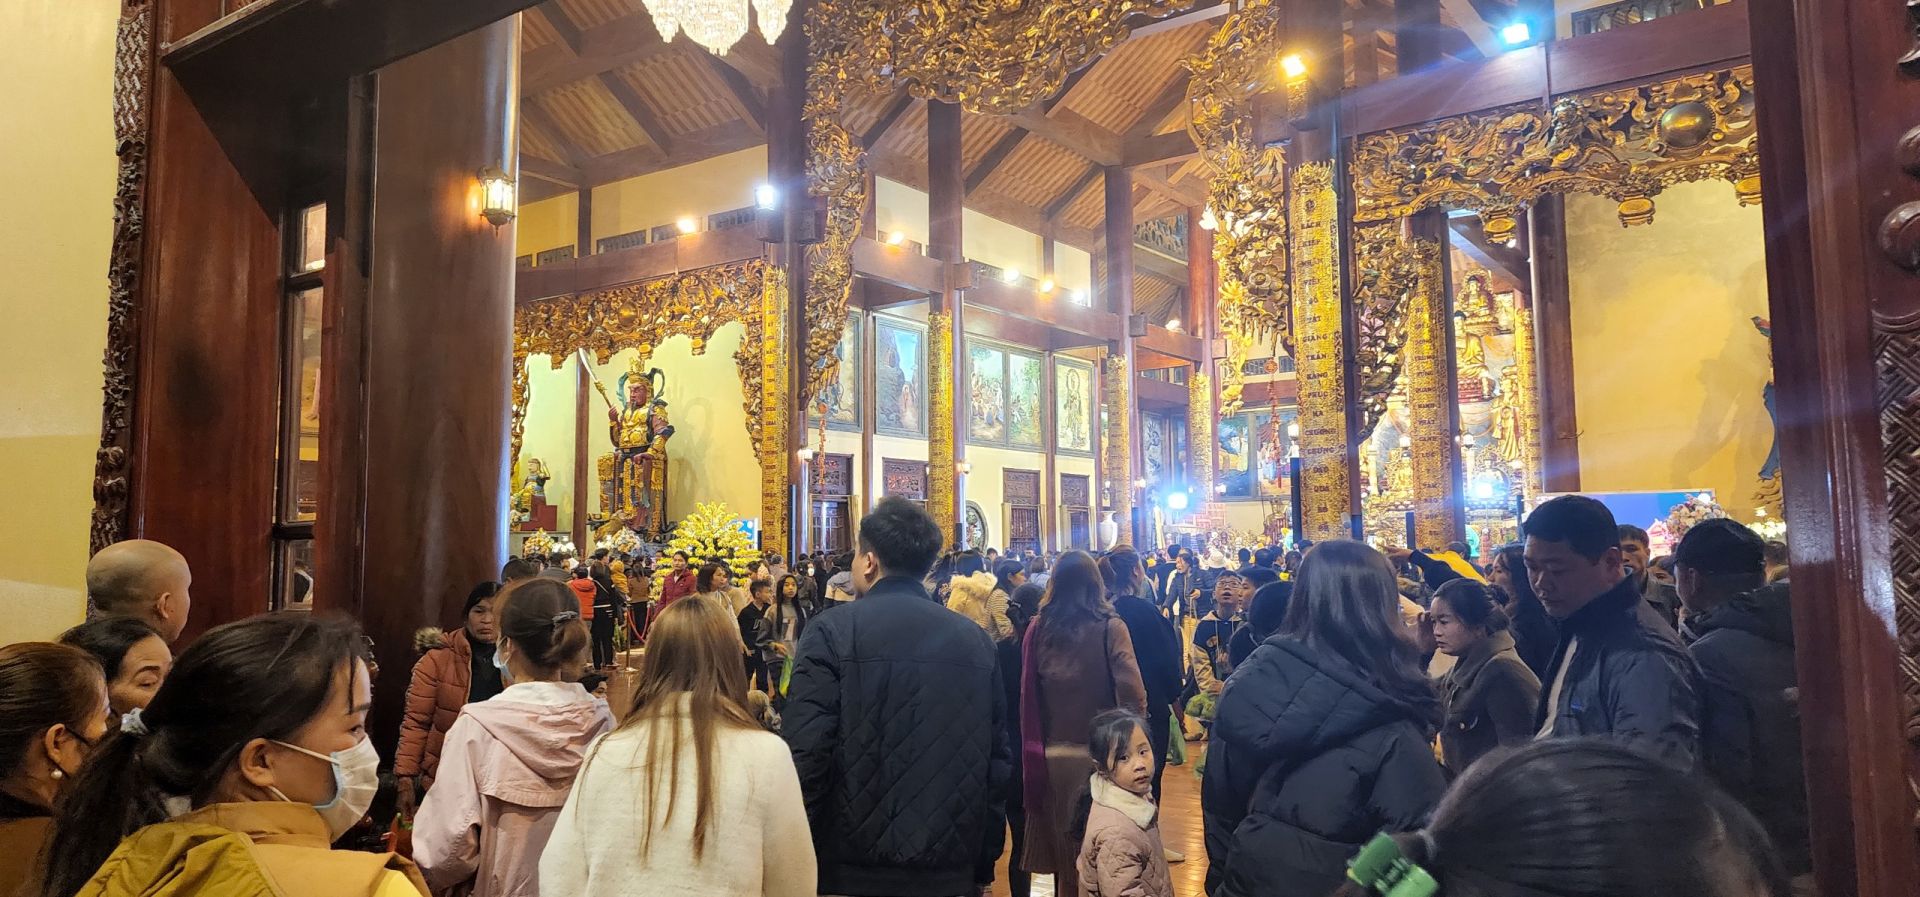 Riêng chính điện chùa Ba Vàng đã  có tới ngàn người tập trung lễ Phật